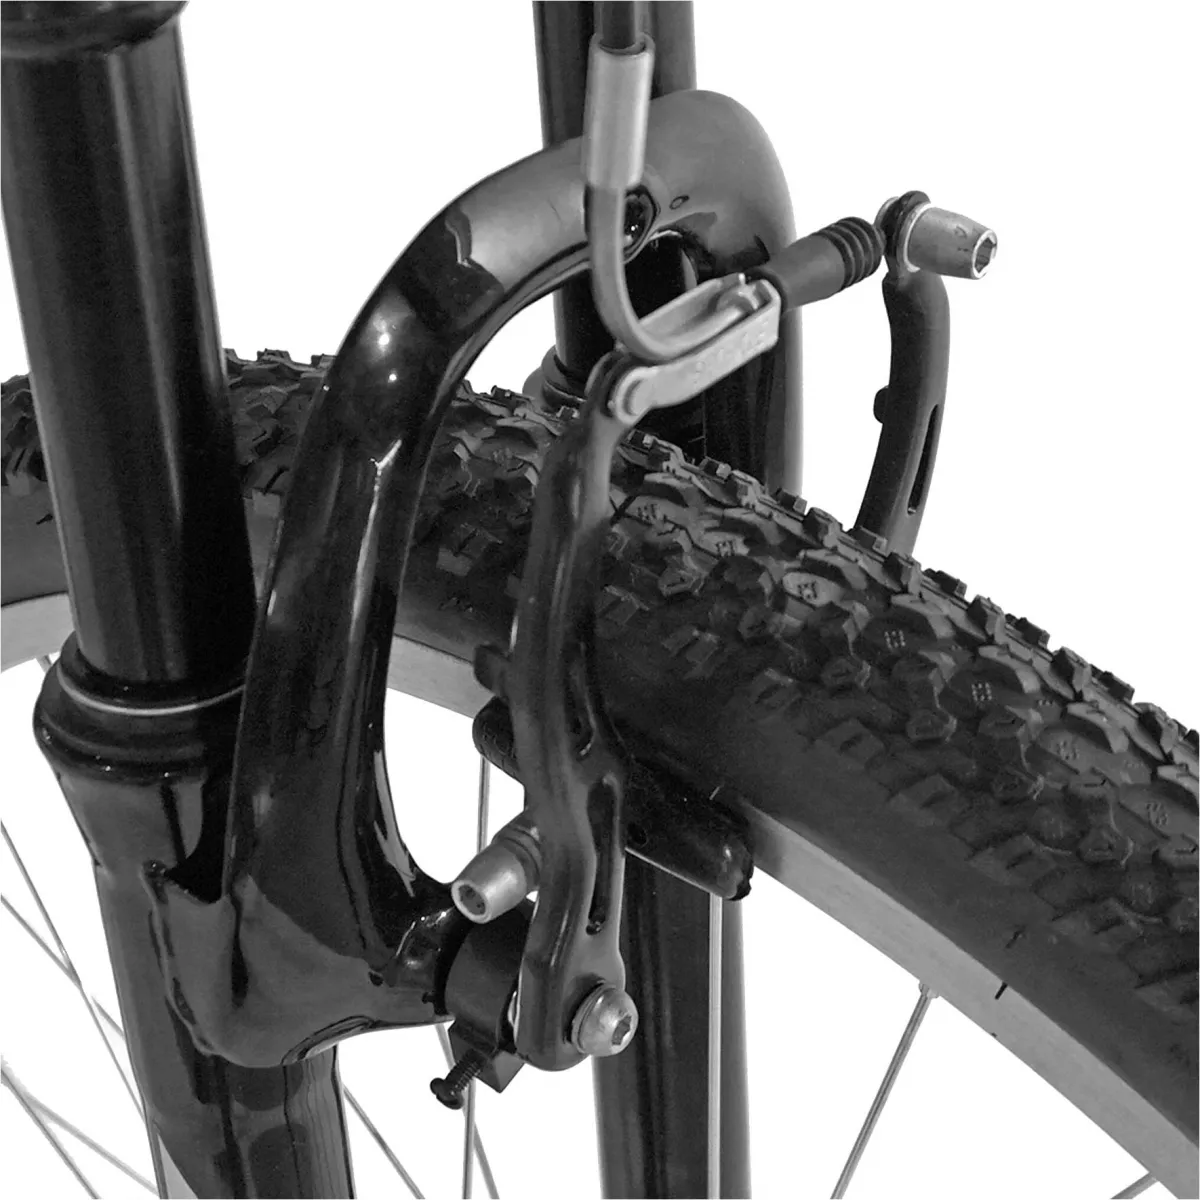 Bicicleta MTB-HT 29" VELORS Scorpion V2971A, cadru aluminiu, 18 viteze, culoare negru/rosu - RESIGILATA